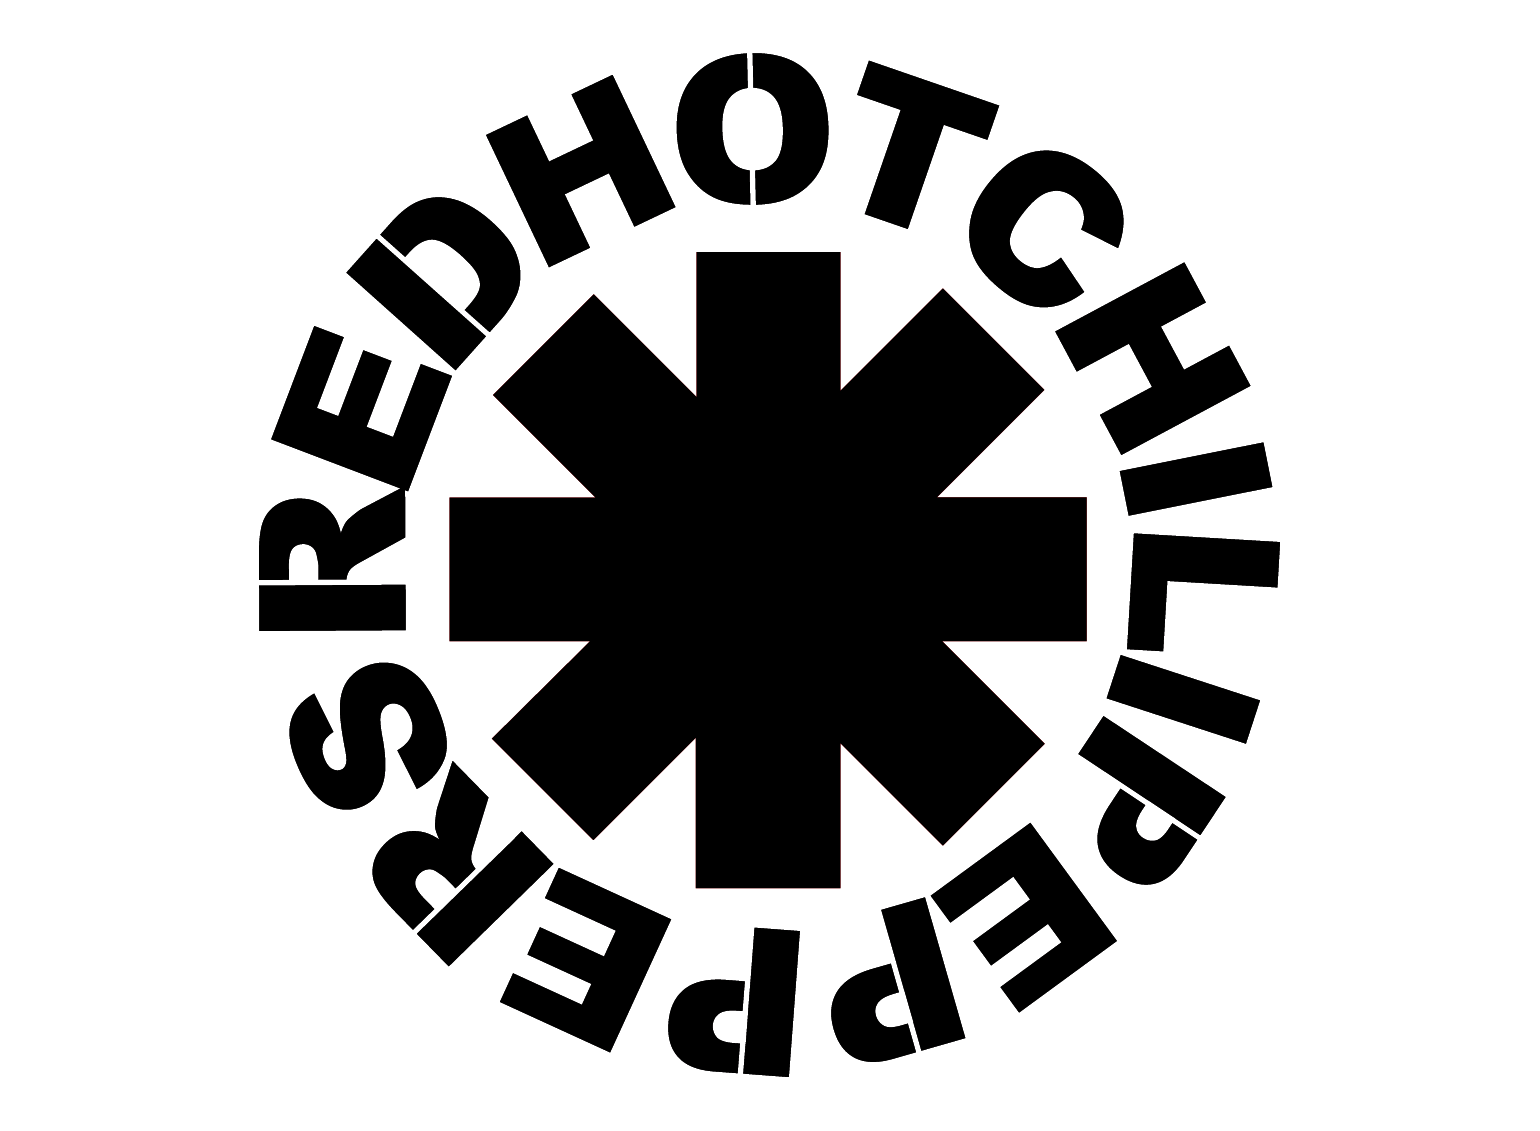 White Hot Logo - Font Red Hot Chili Peppers Logo | All logos world | Pinterest ...